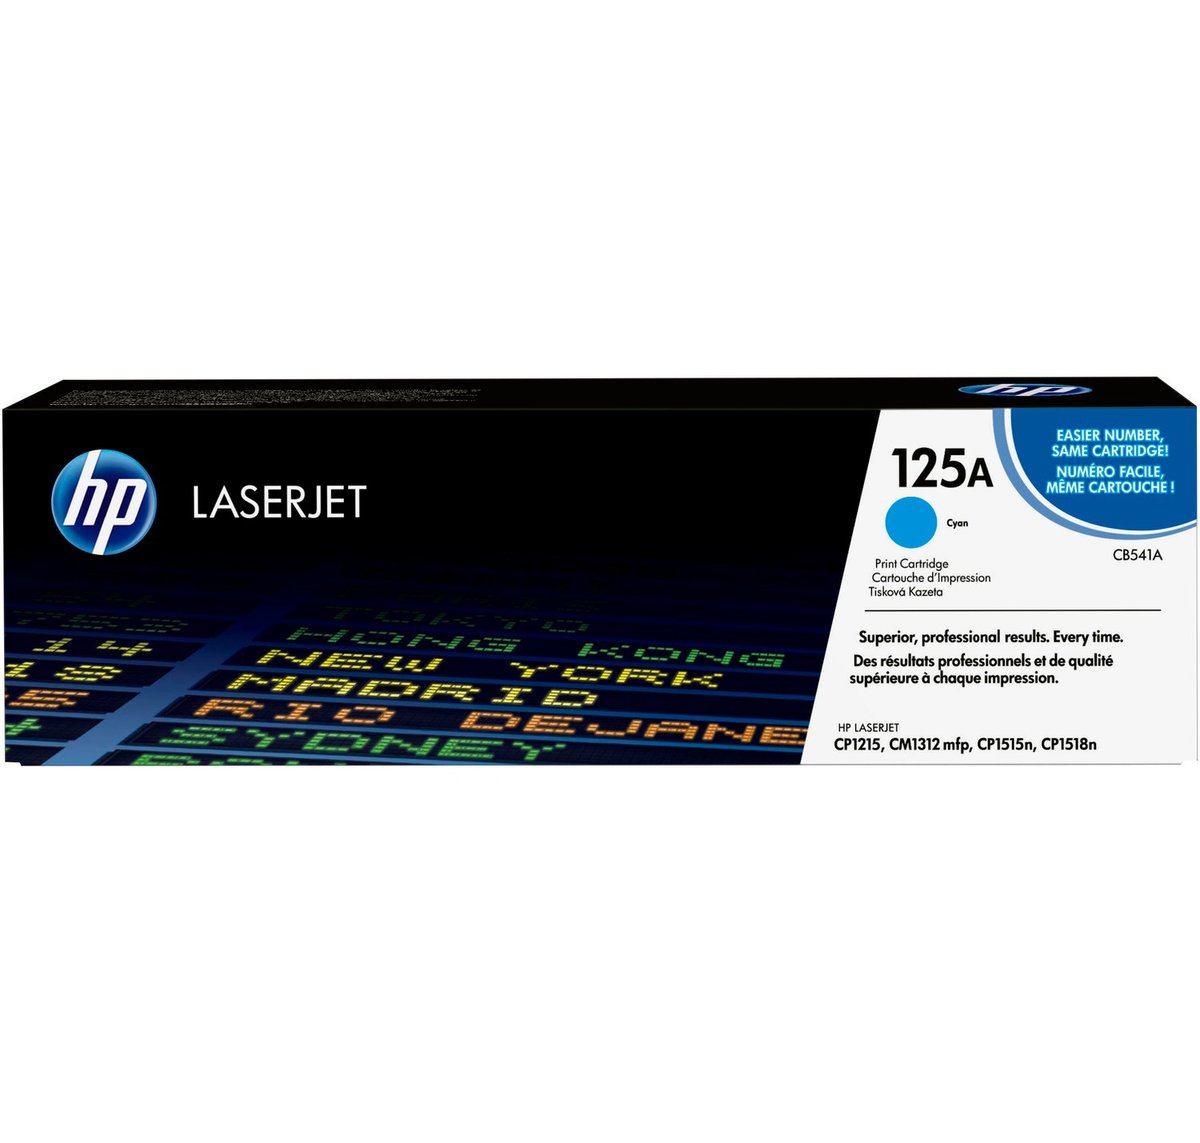 Картридж HP CB541A 125A оригинальный синий для принтеров LASERJET CP1215 | LASERJET CM1312 mfp | LASERJET CP1515n | LASERJET CP1518n